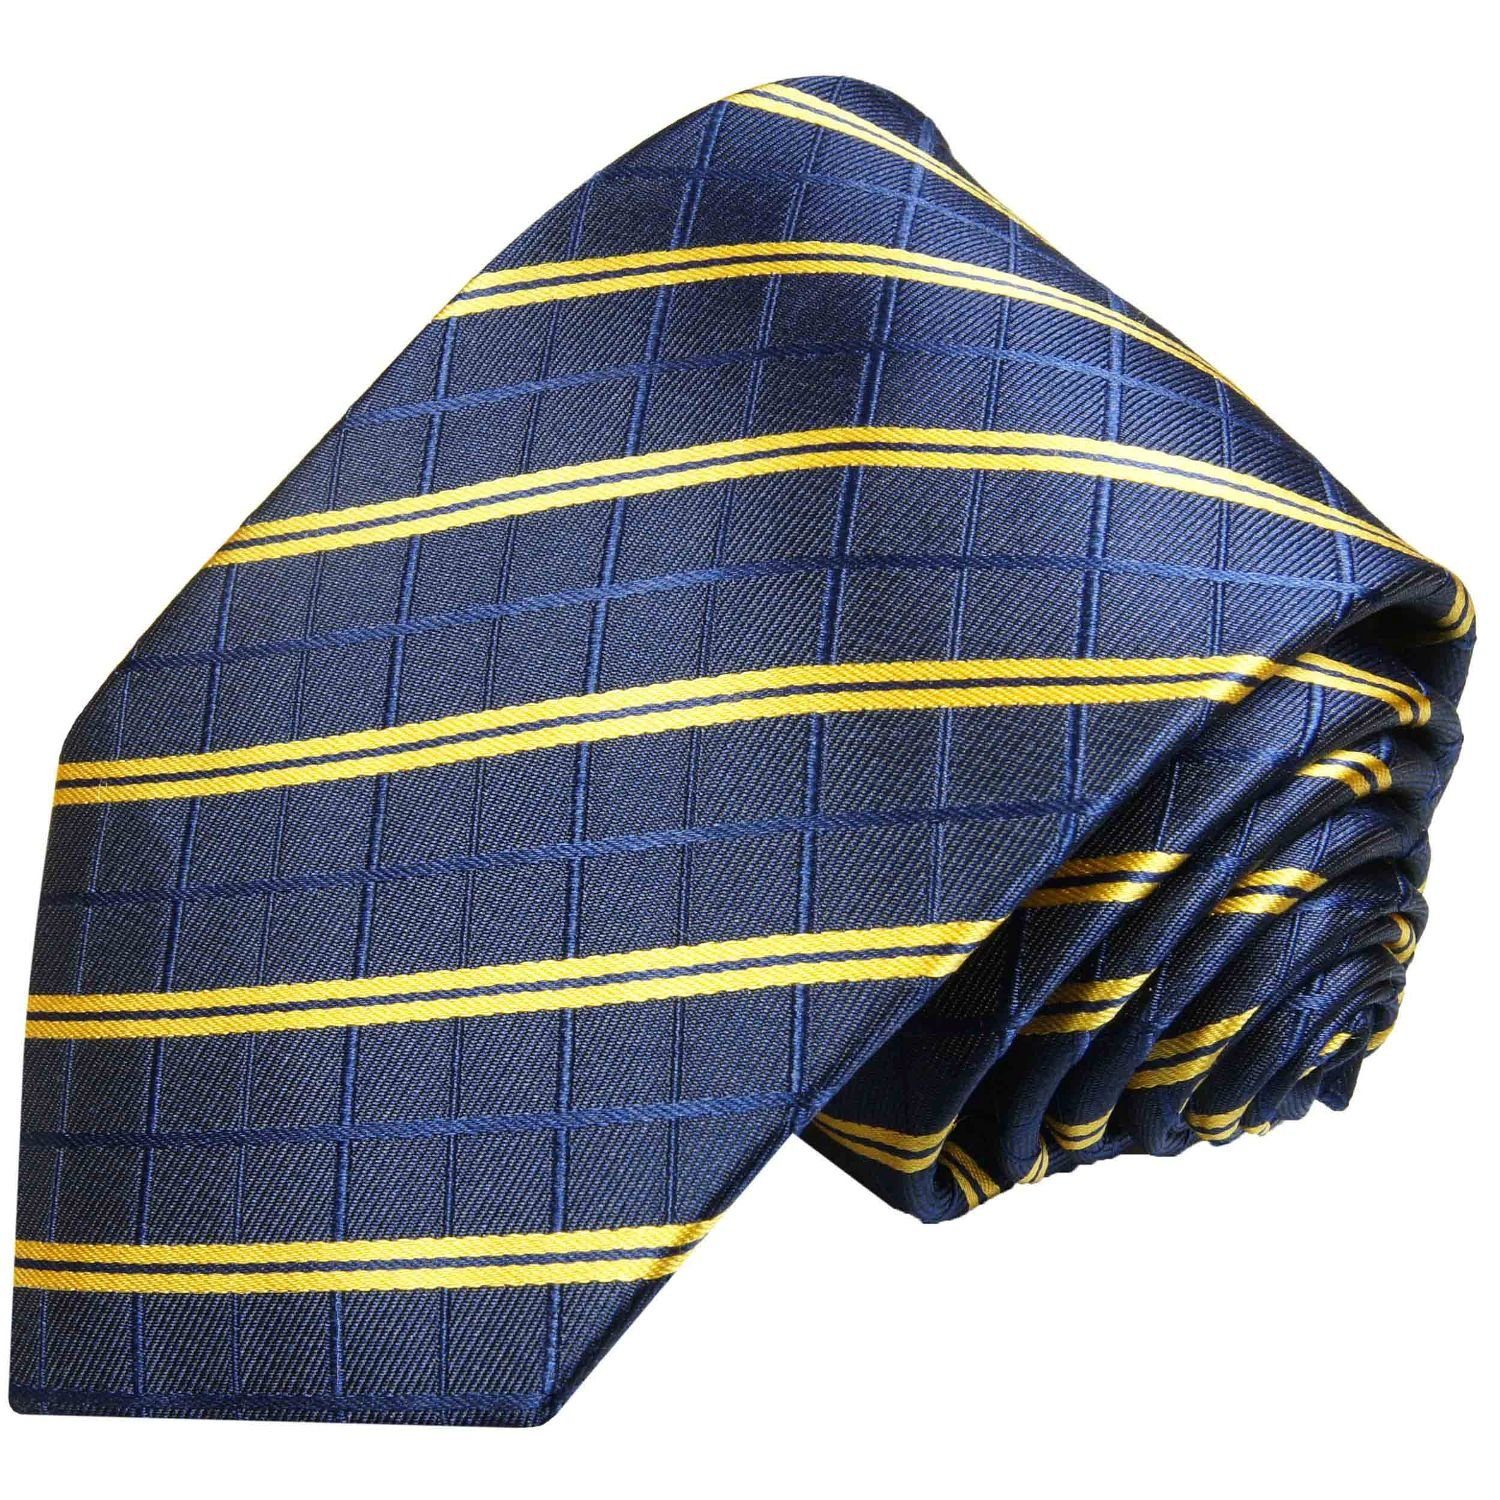 Paul Malone Krawatte Moderne Herren Seidenkrawatte gestreift 100% Seide Schmal (6cm), blau gold 2021